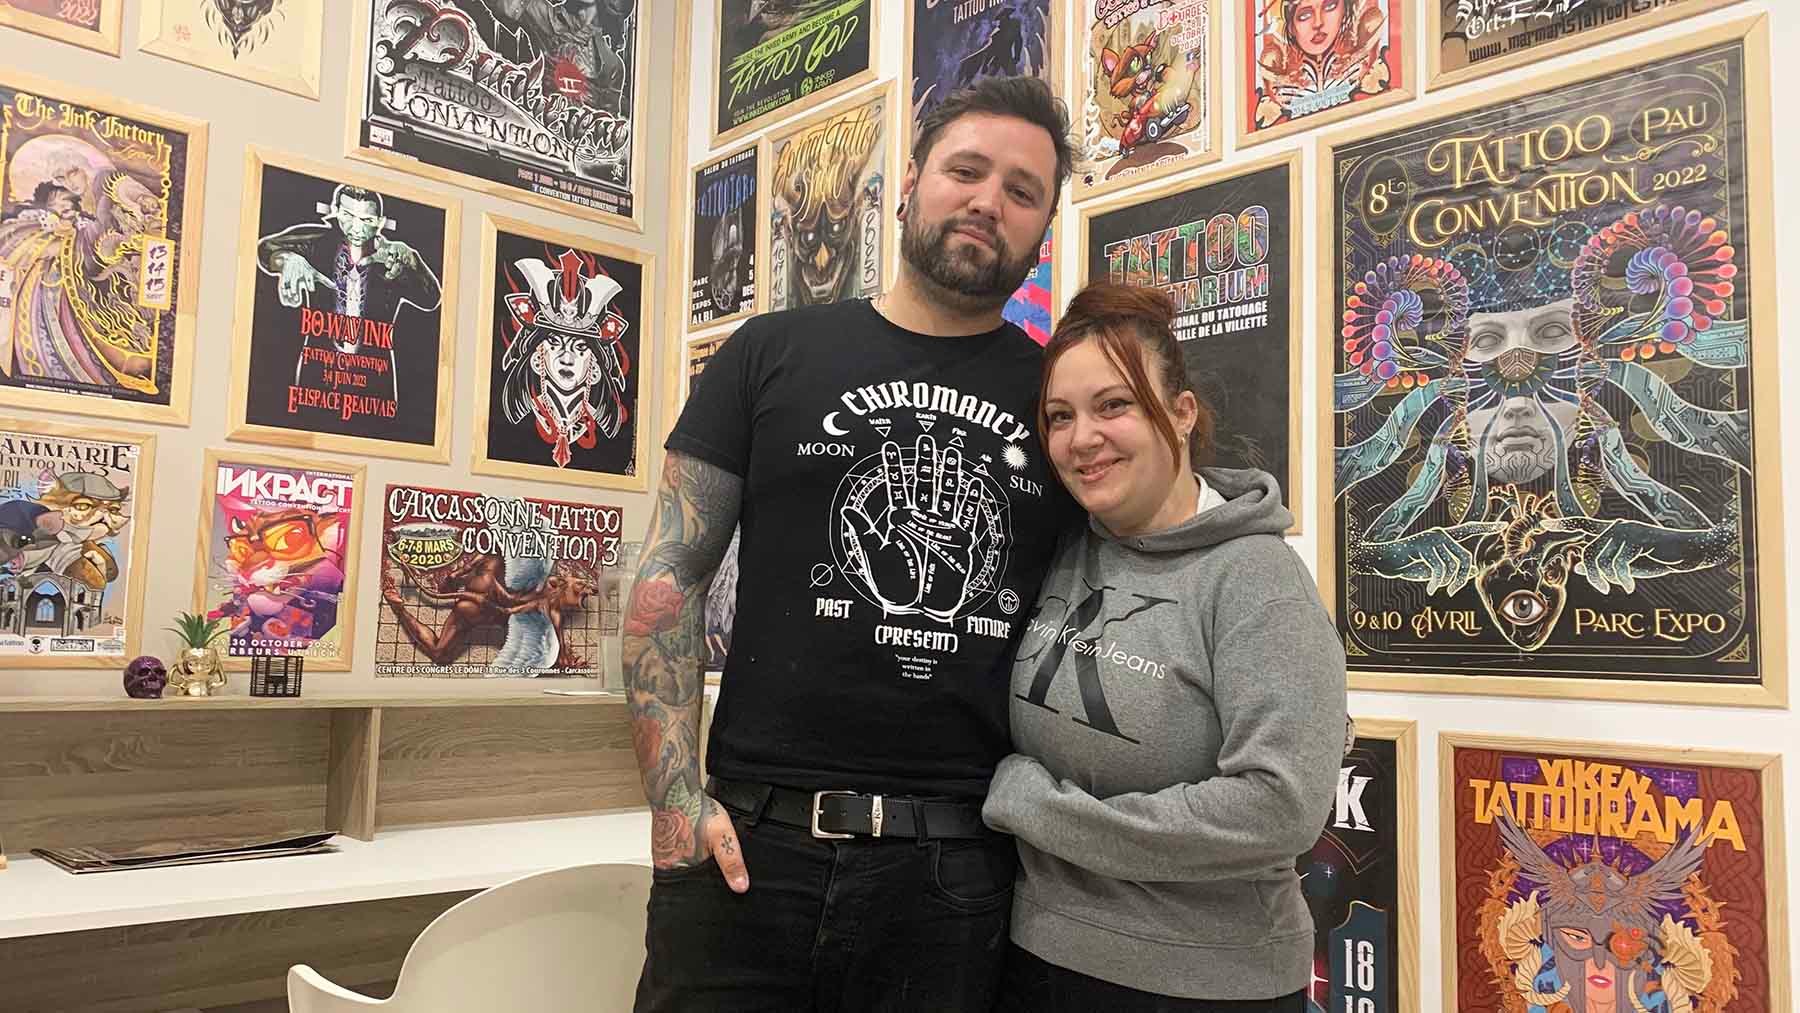 El estudio de tatuajes de Pamplona con el estilo más rebelde e invitados internacionales